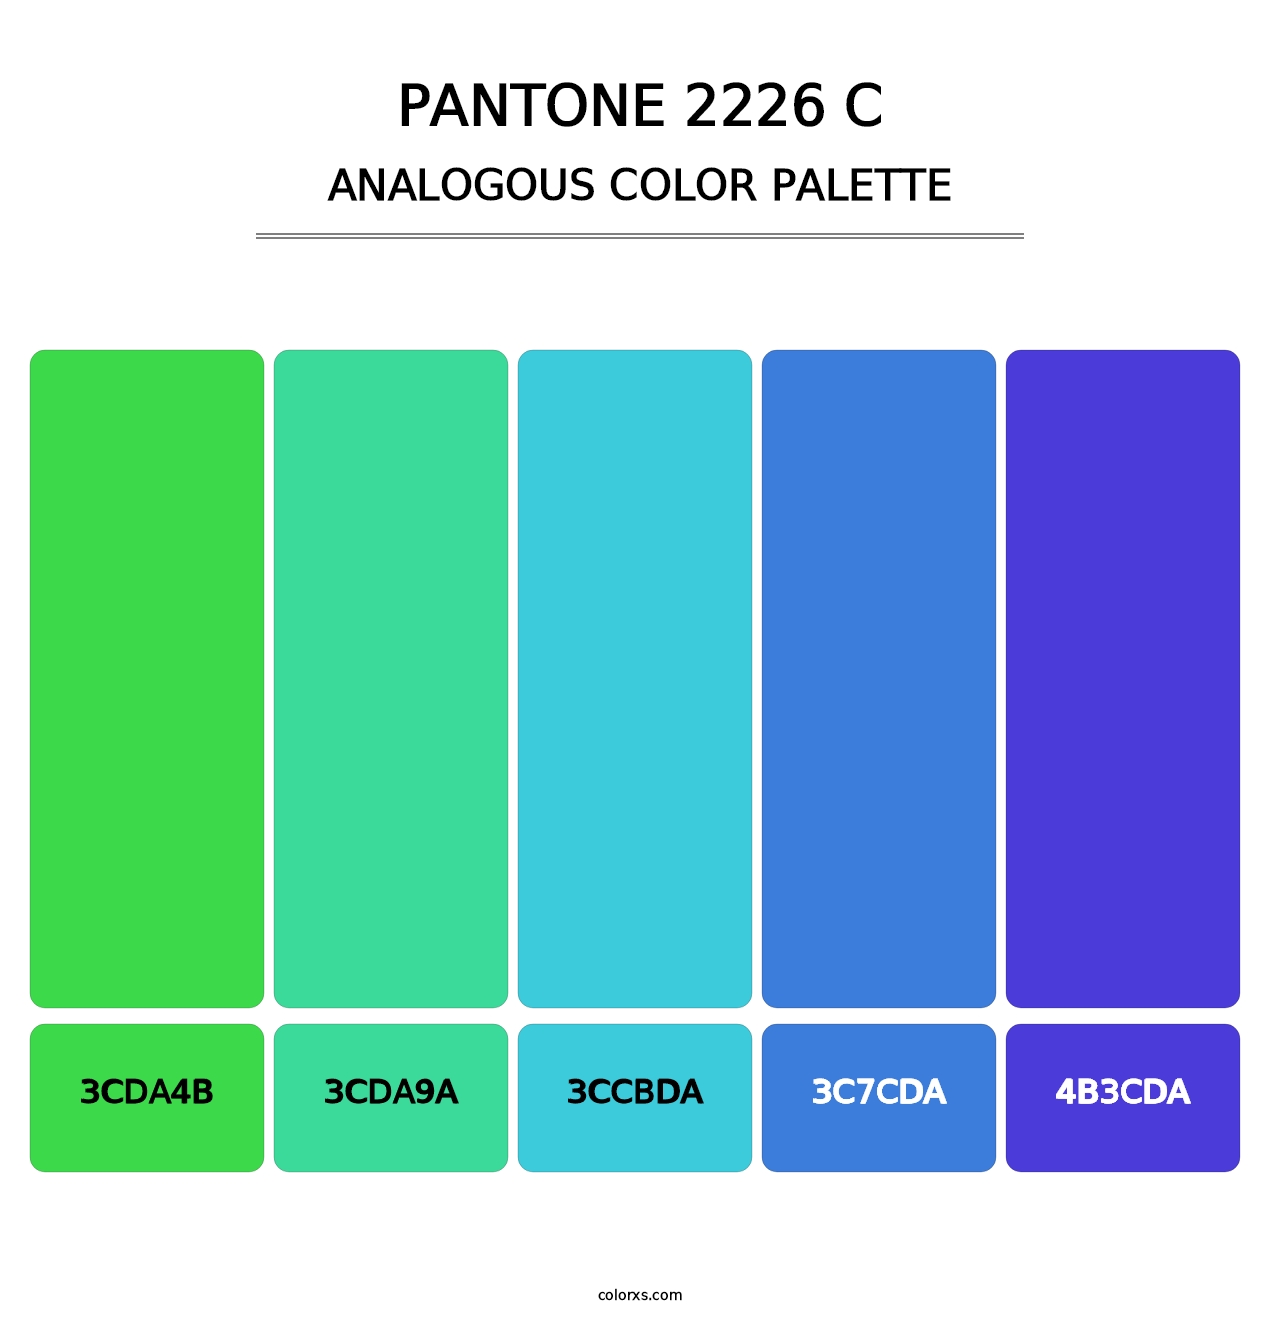 PANTONE 2226 C - Analogous Color Palette